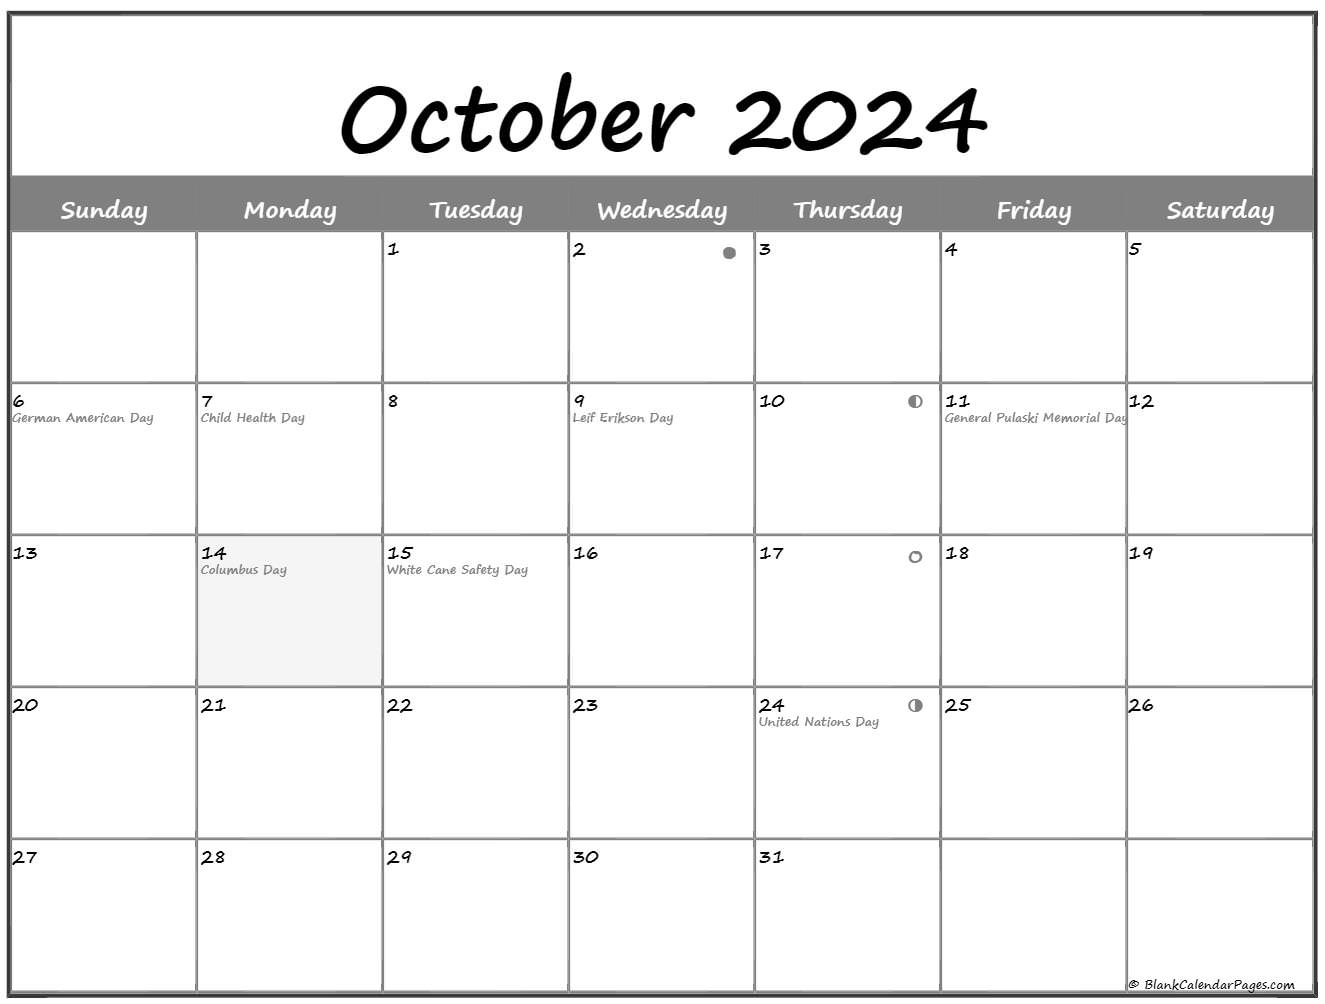 October 2022 Lunar Calendar October 2022 Lunar Calendar | Moon Phase Calendar